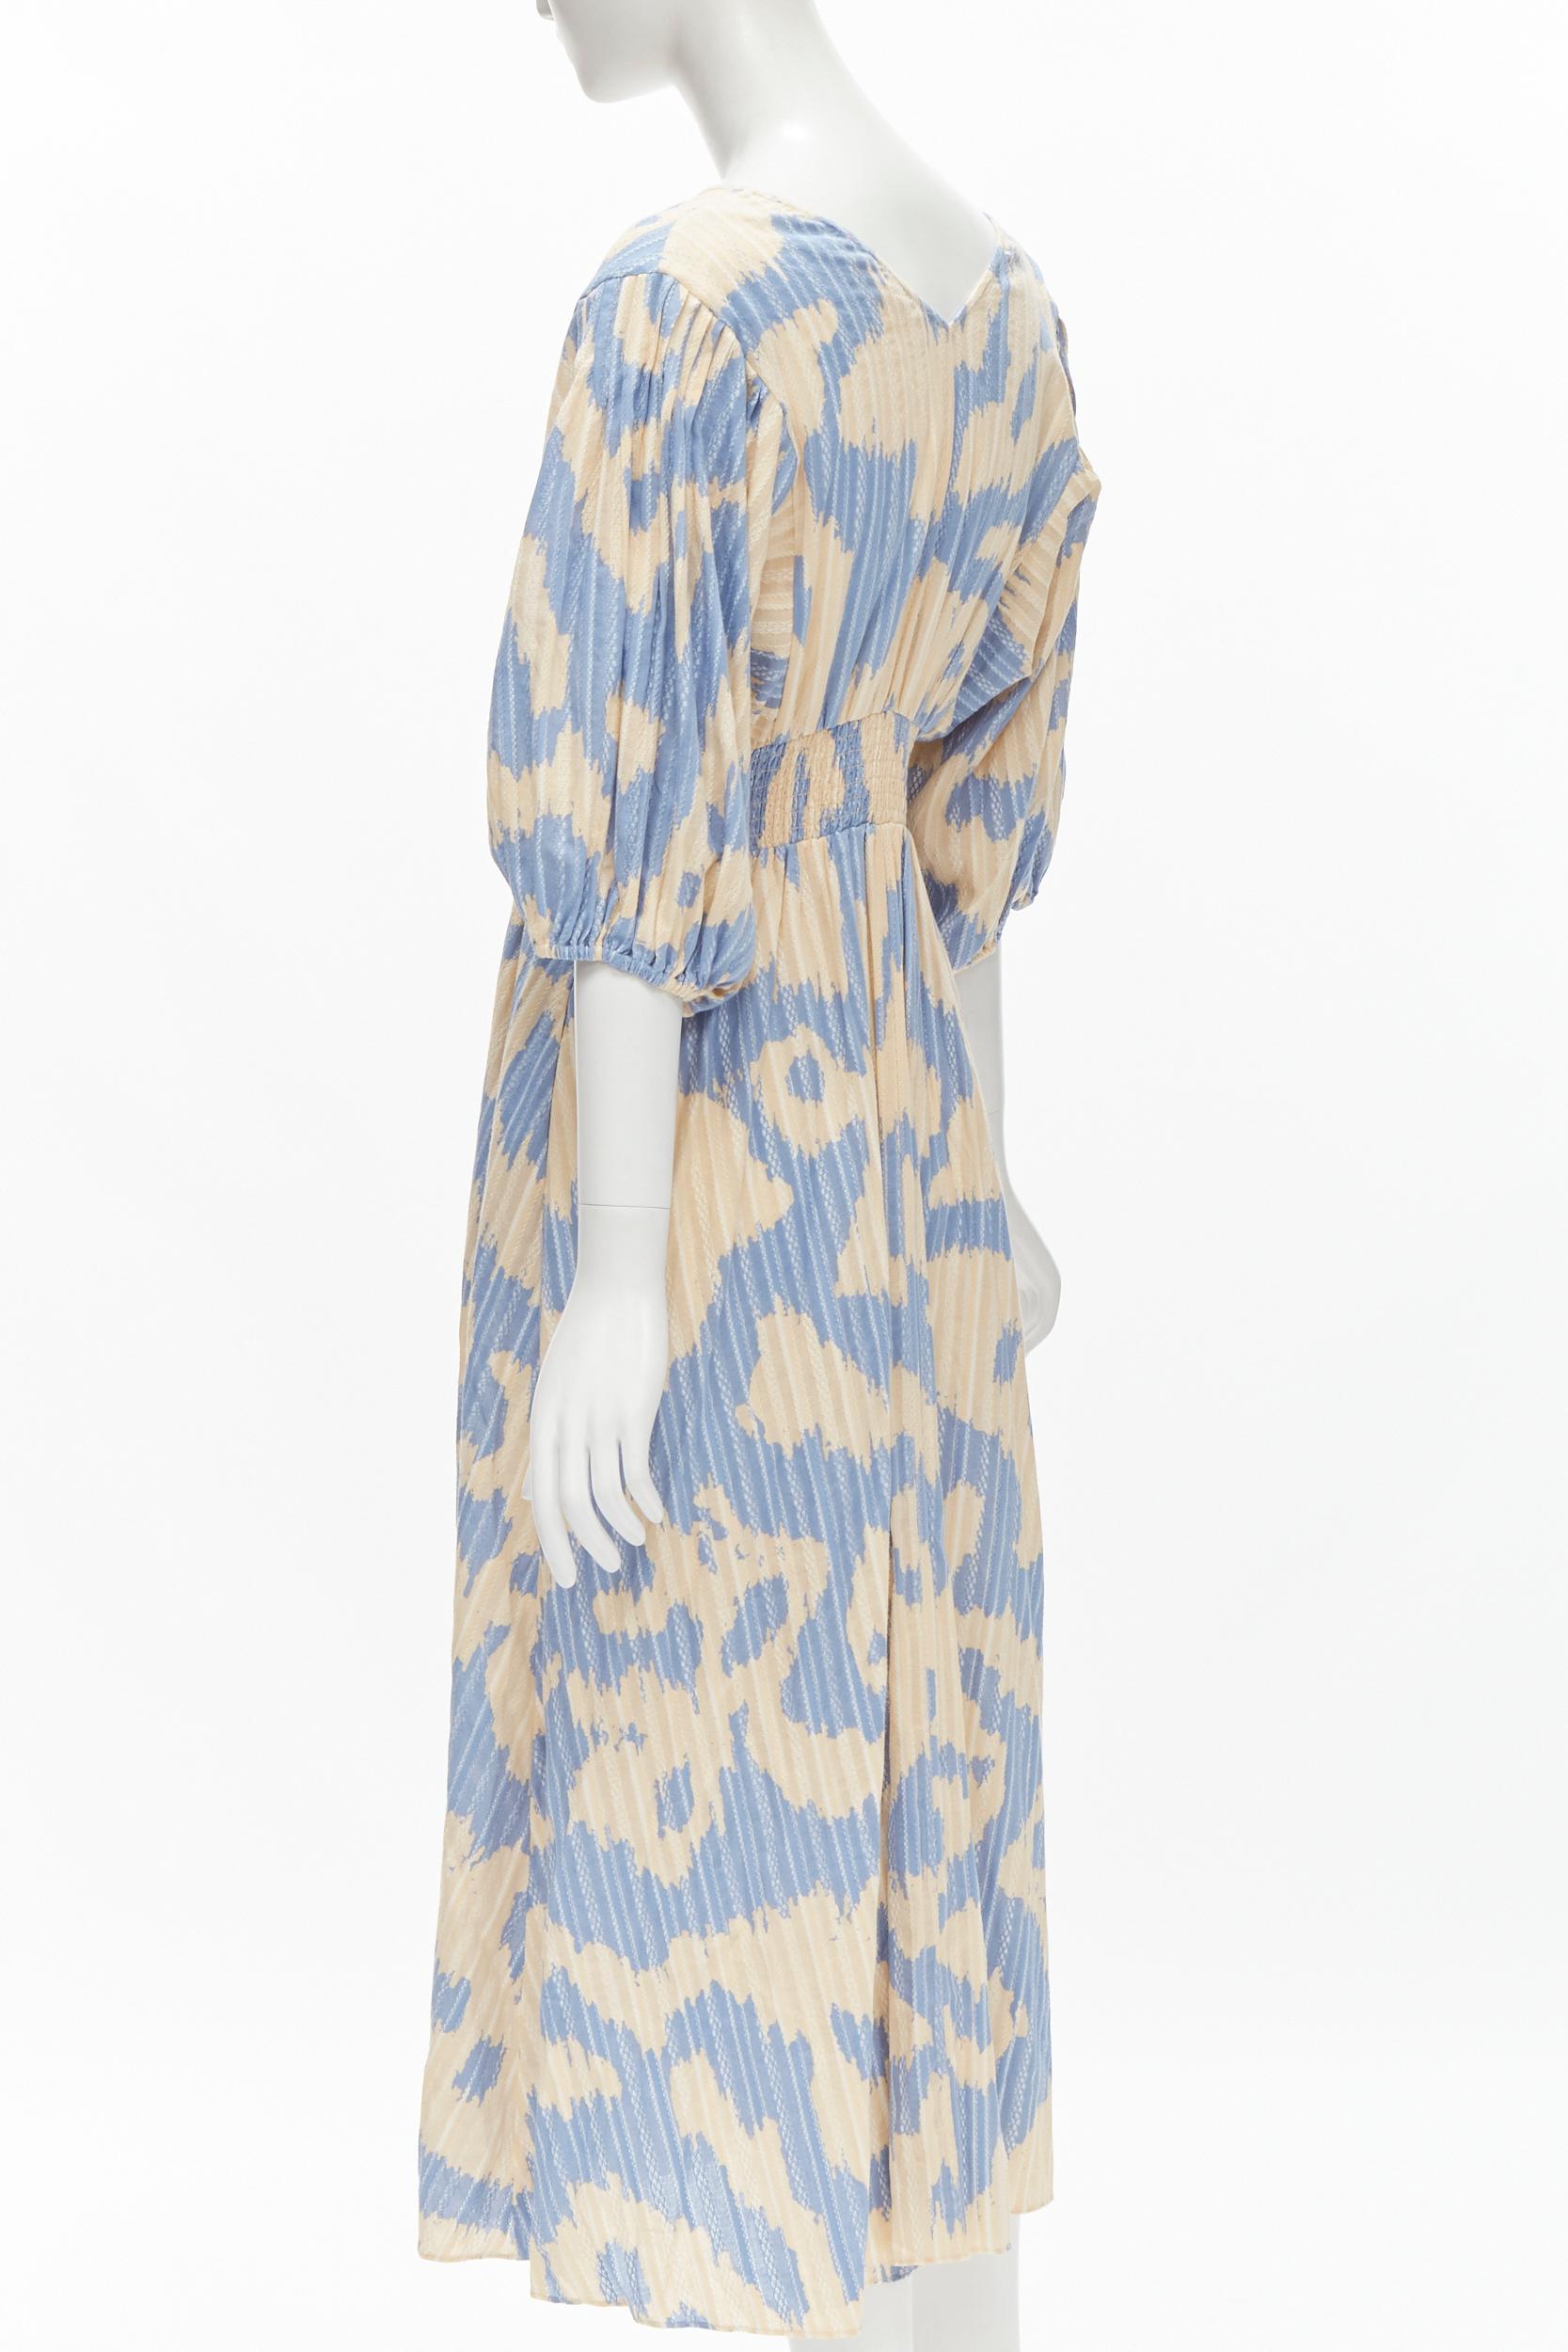 DIANE VON FURSTENBERG beige blue print lattice embroidery puff sleeve dress US8 For Sale 2